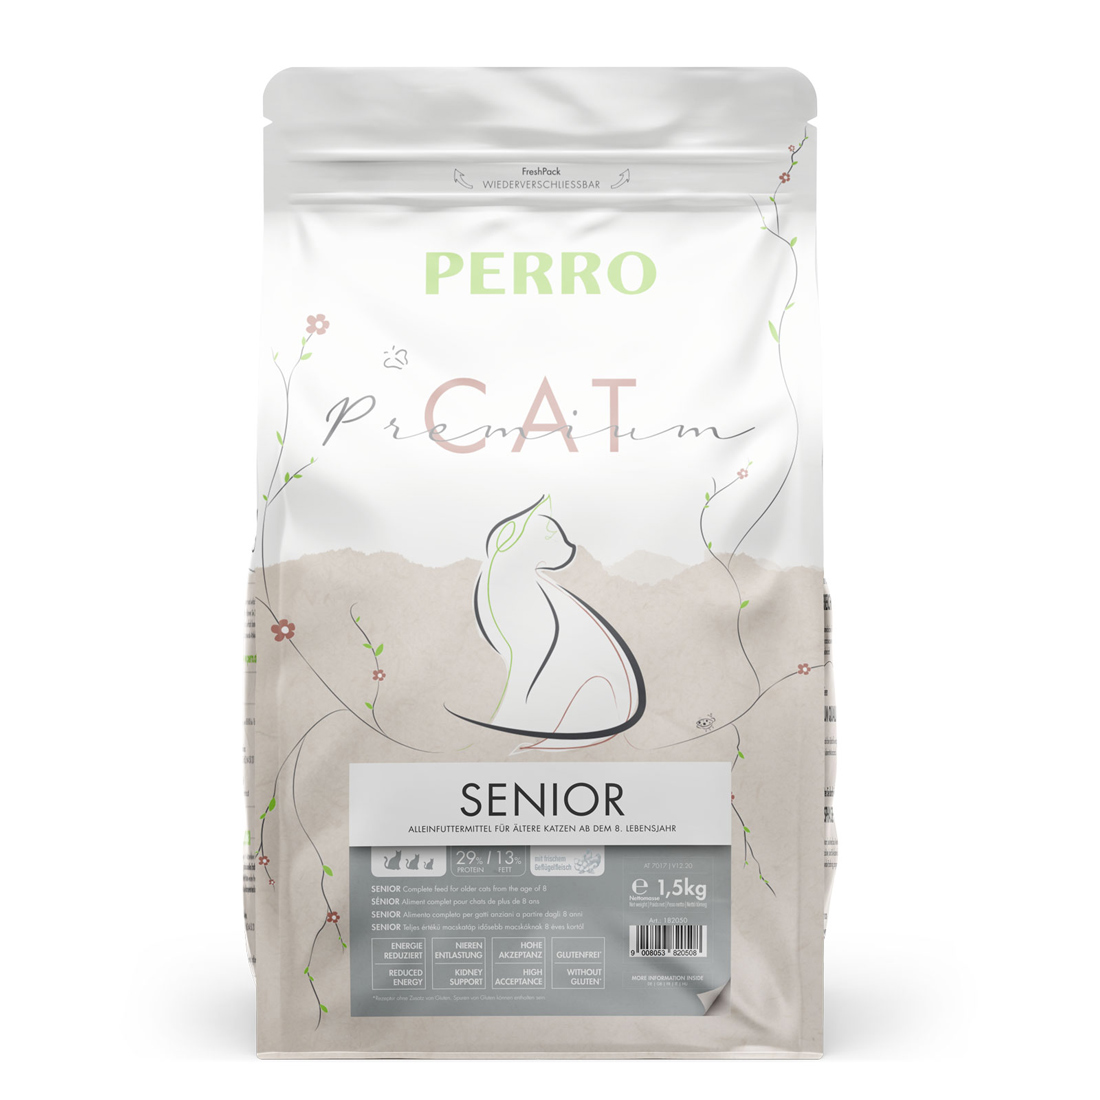 PERRO Cat Premium Senior